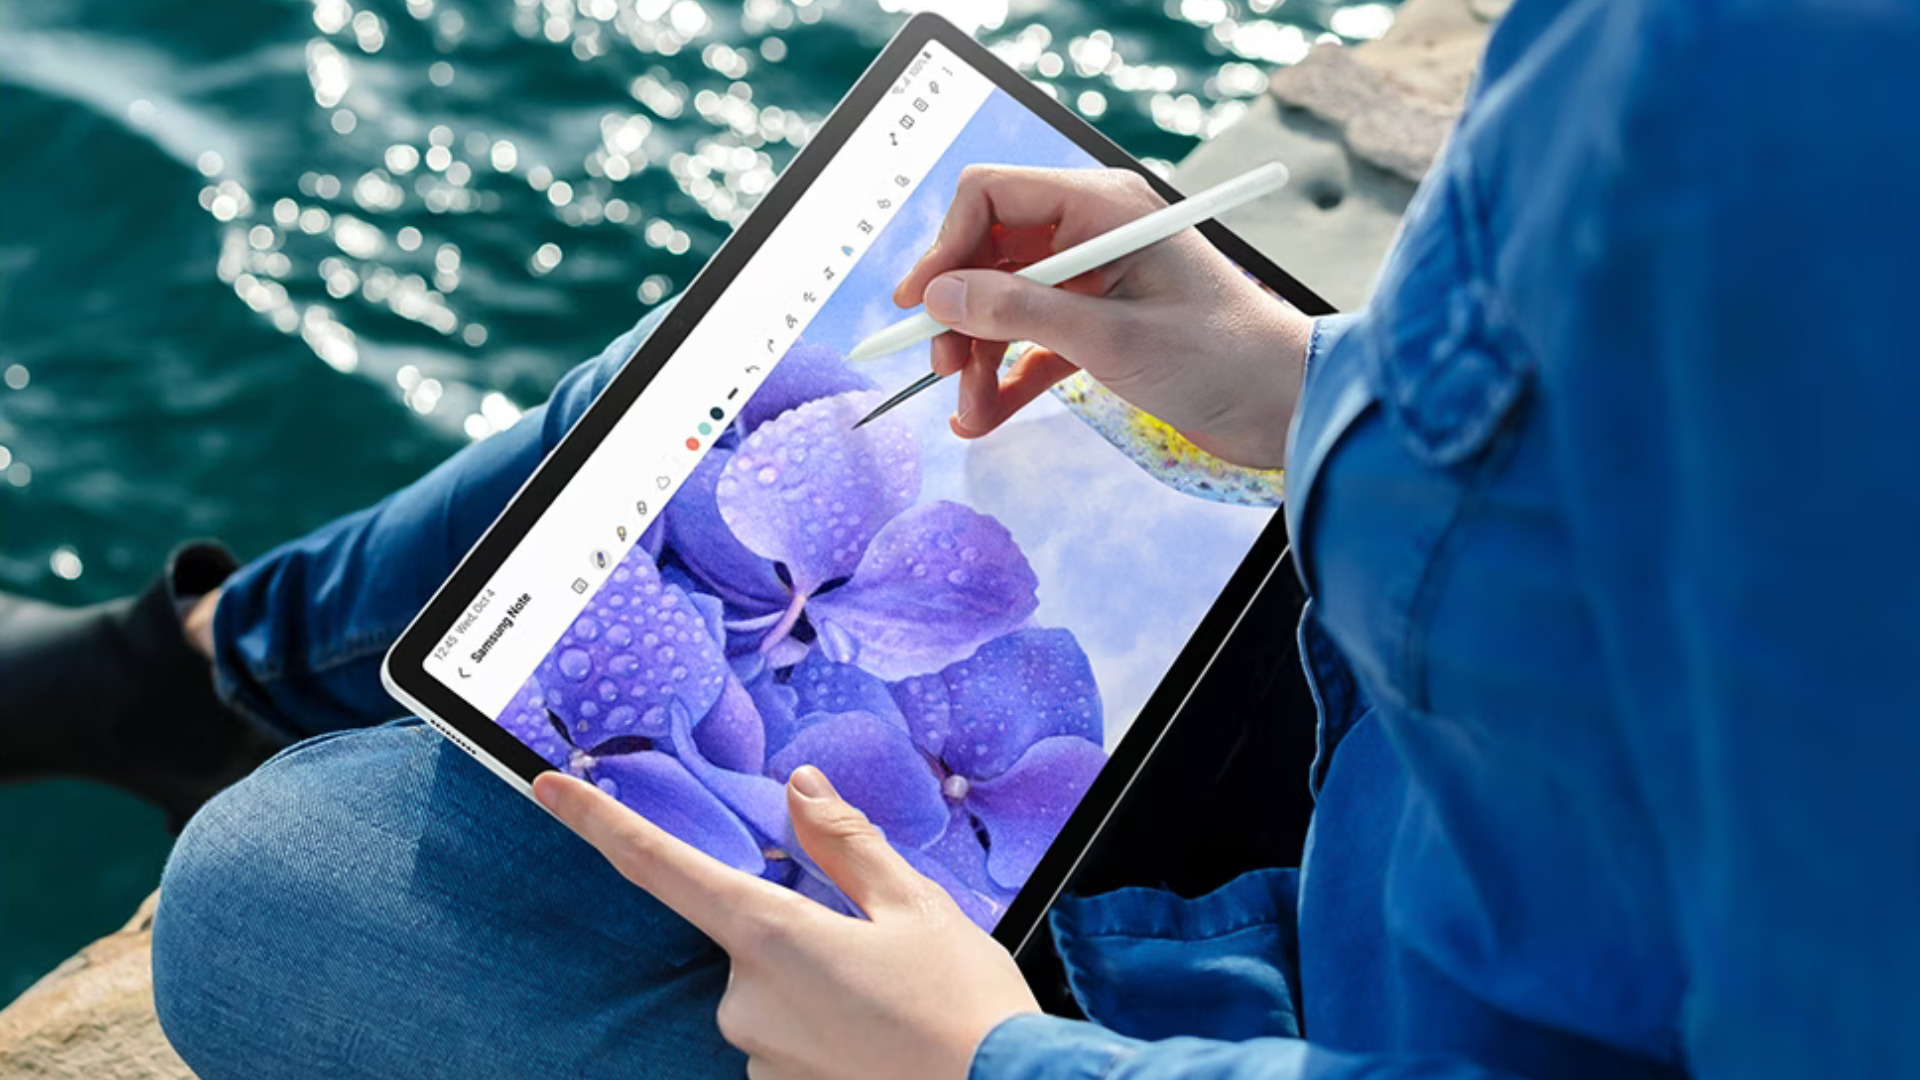 La grande tablette Samsung Galaxy Tab S8 Ultra en promotion - Numerama